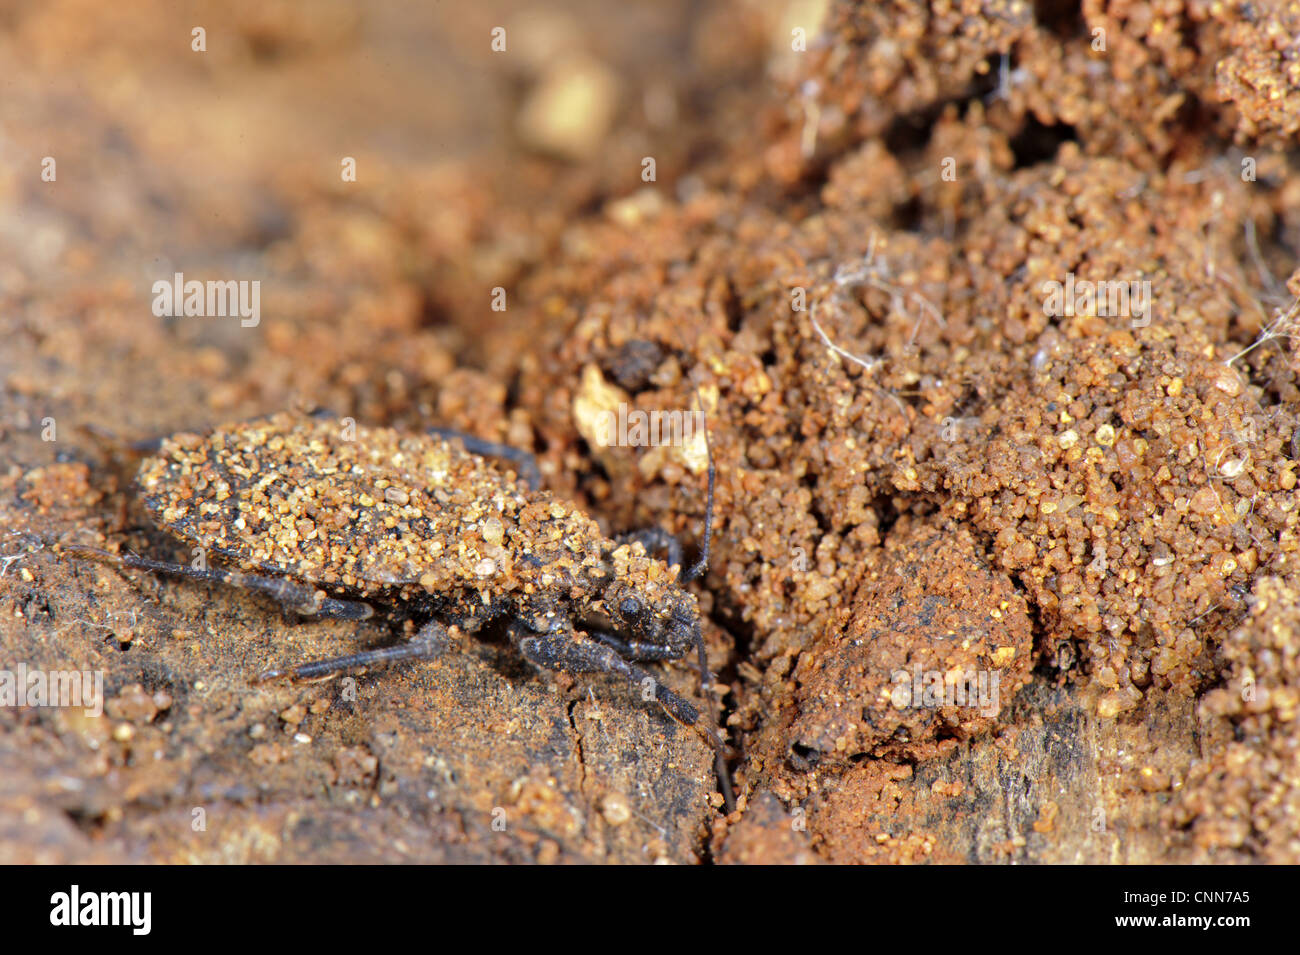 Junge Nymphe Assassin Bug (Reduviidae SP.), bedeckt mit Sandpartikeln, mimetischen Verhalten, Südafrika Stockfoto